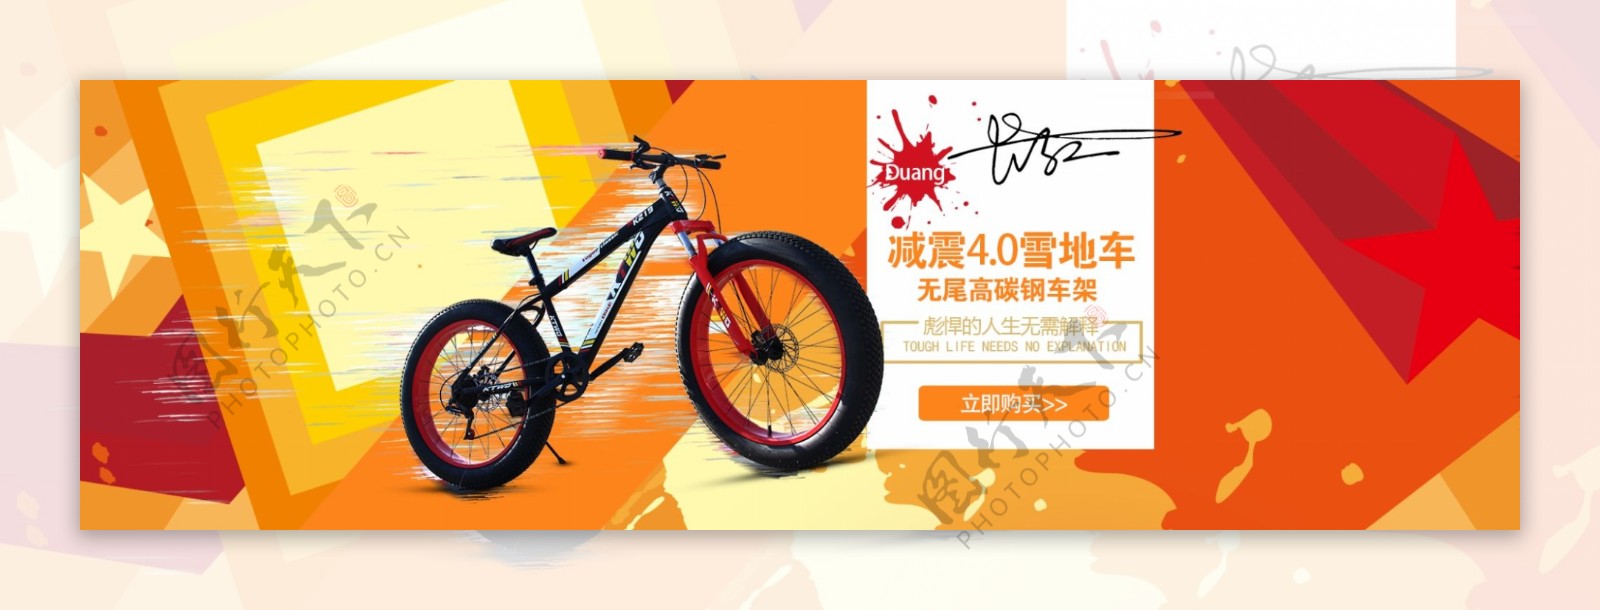 自行车炫酷首页海报